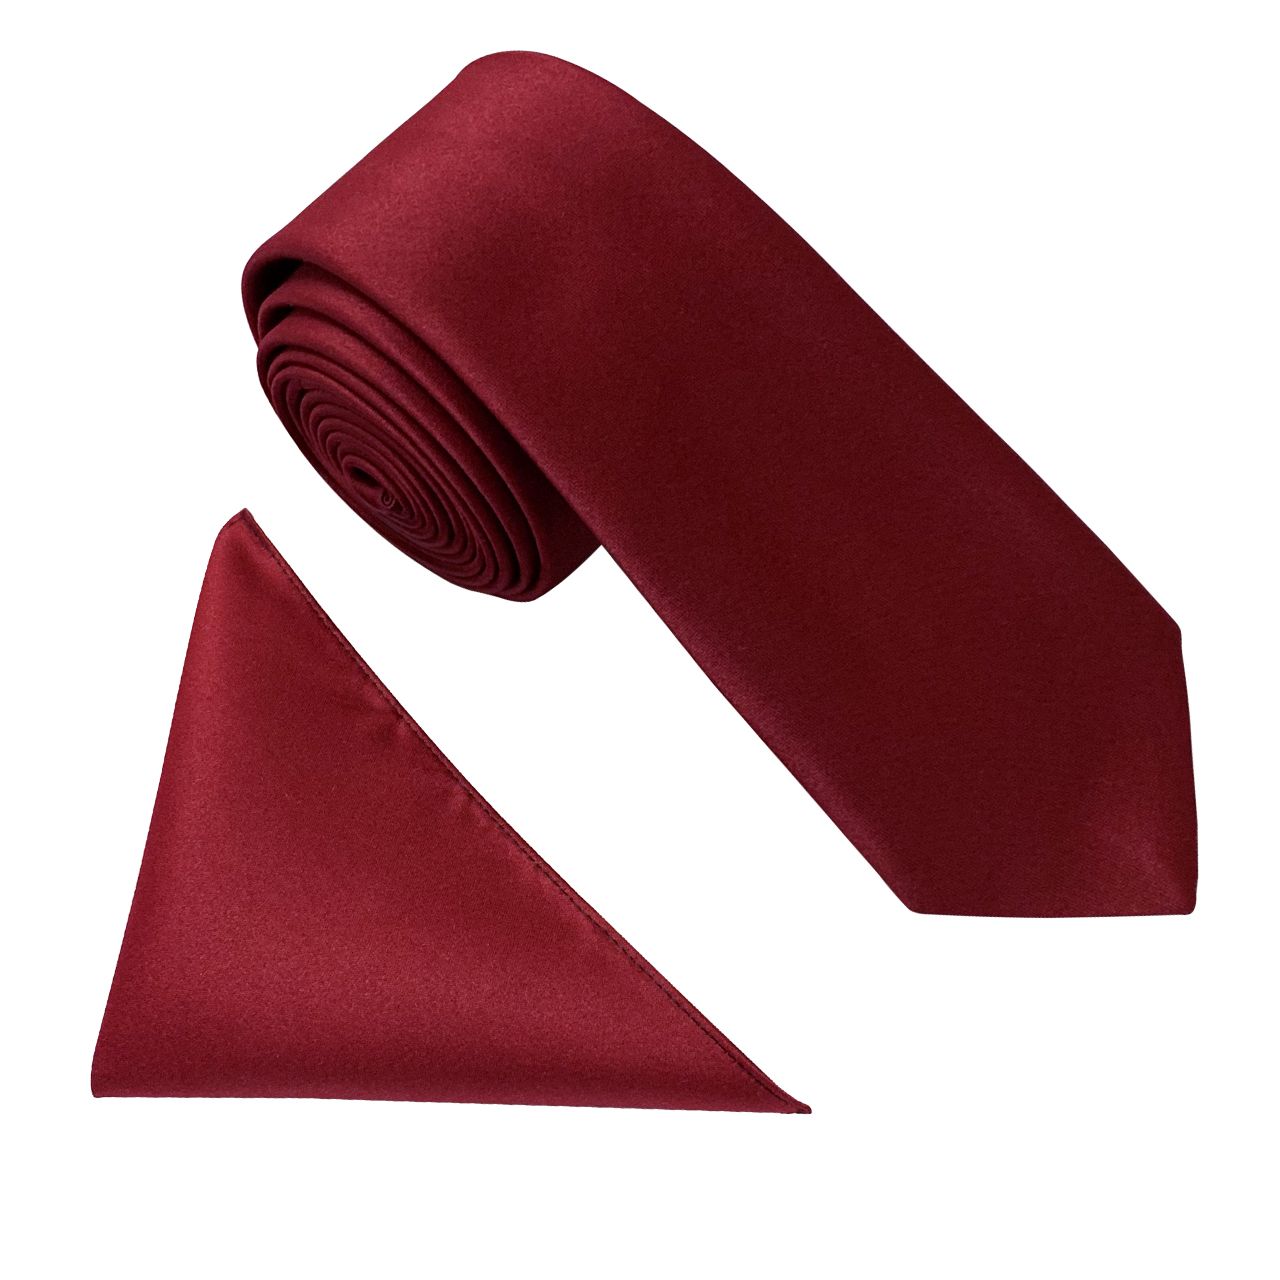 ست کراوات و دستمال جیب مردانه کد KS007 -  - 1